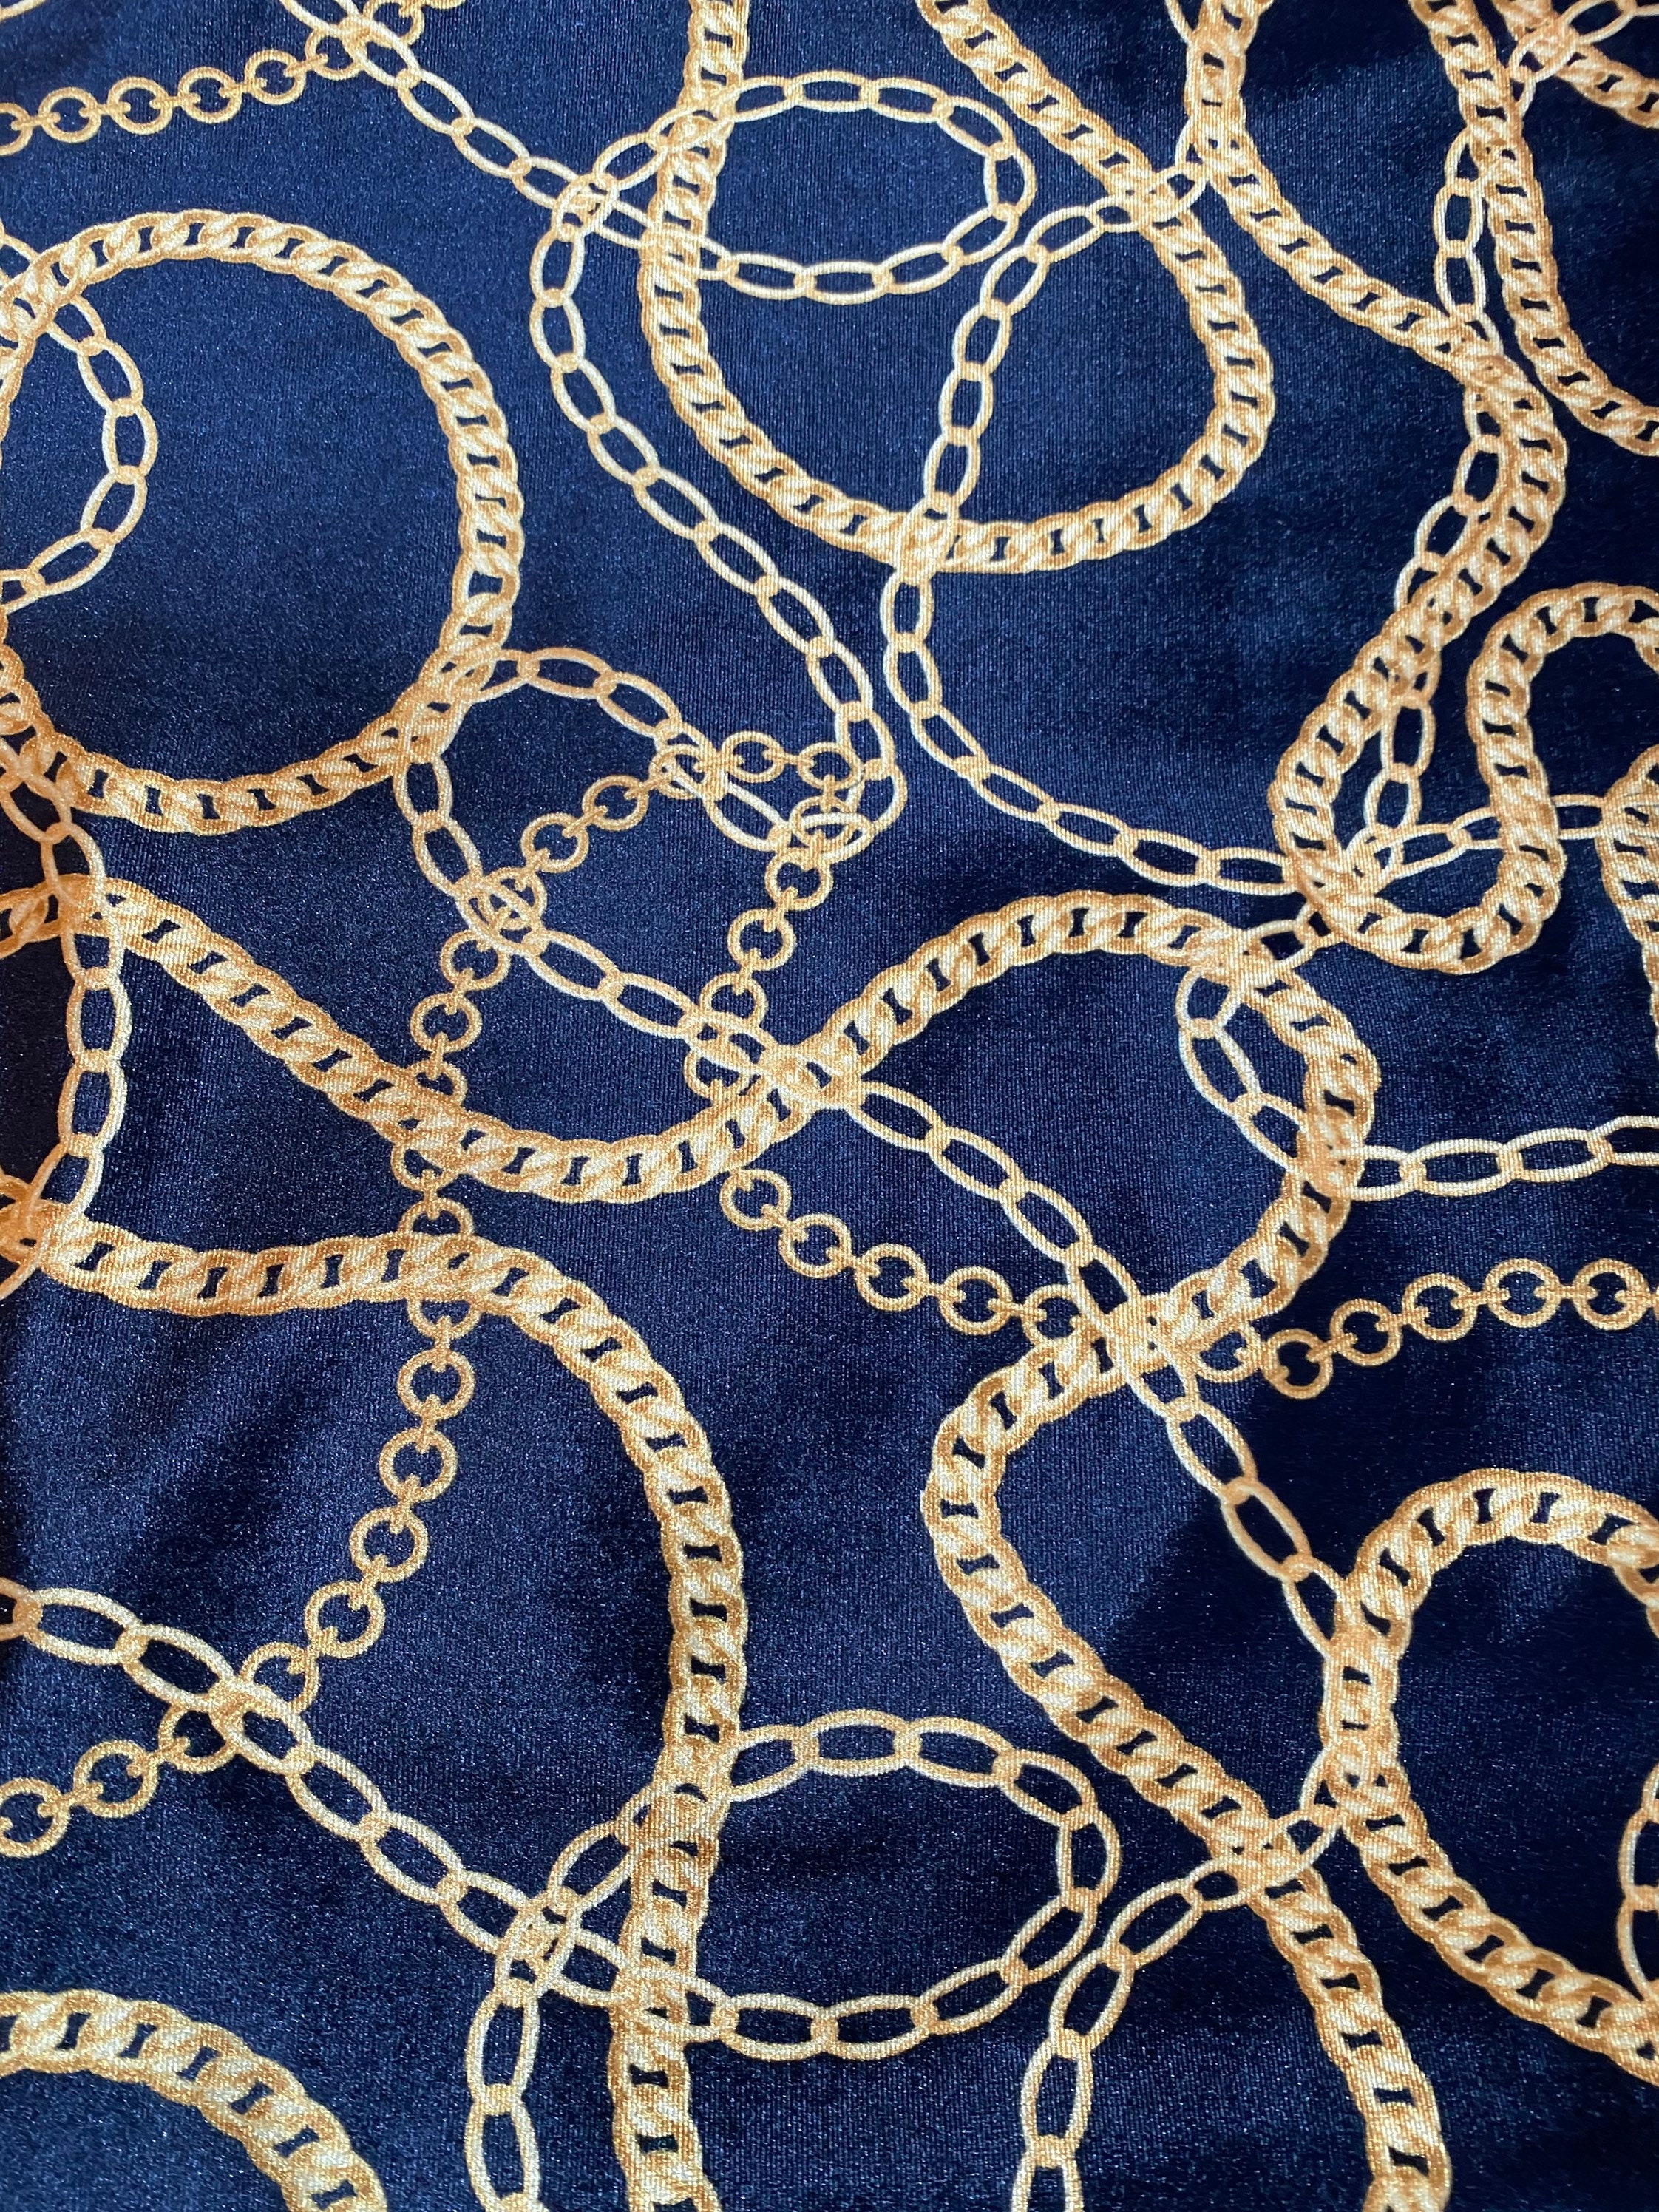 GG Black & Gold Velvet Designer Inspired Spandex Fabric